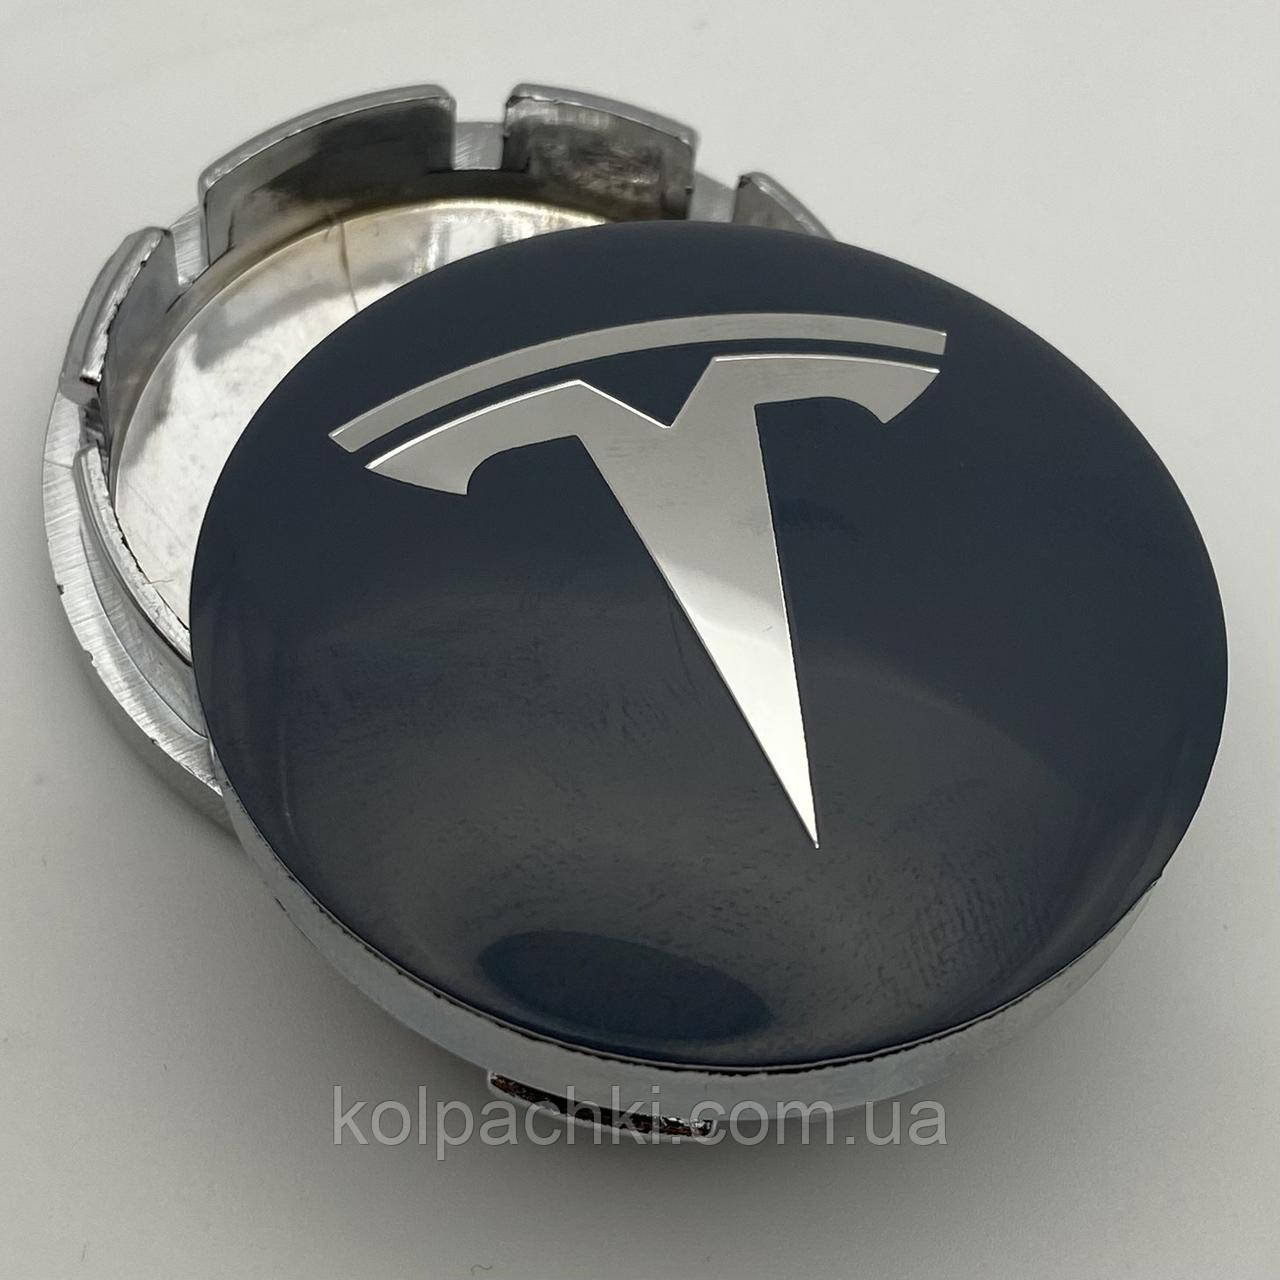 Ковпачок із логотипом Tesla 56 мм 52 мм сірі